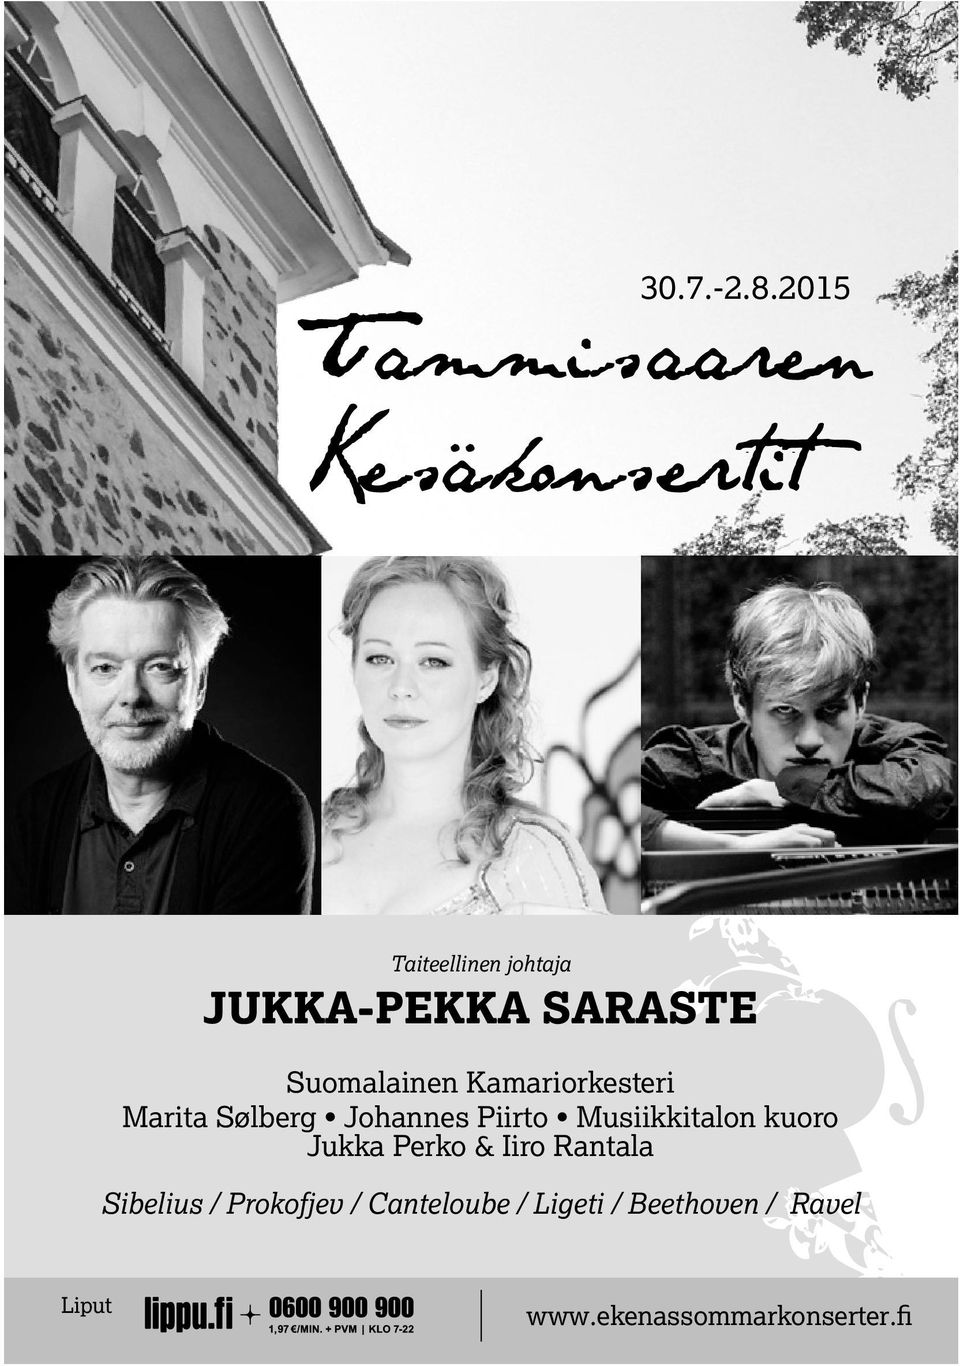 Kamariorkesteri Marita Sølberg Johannes Piirto Musiikkitalon